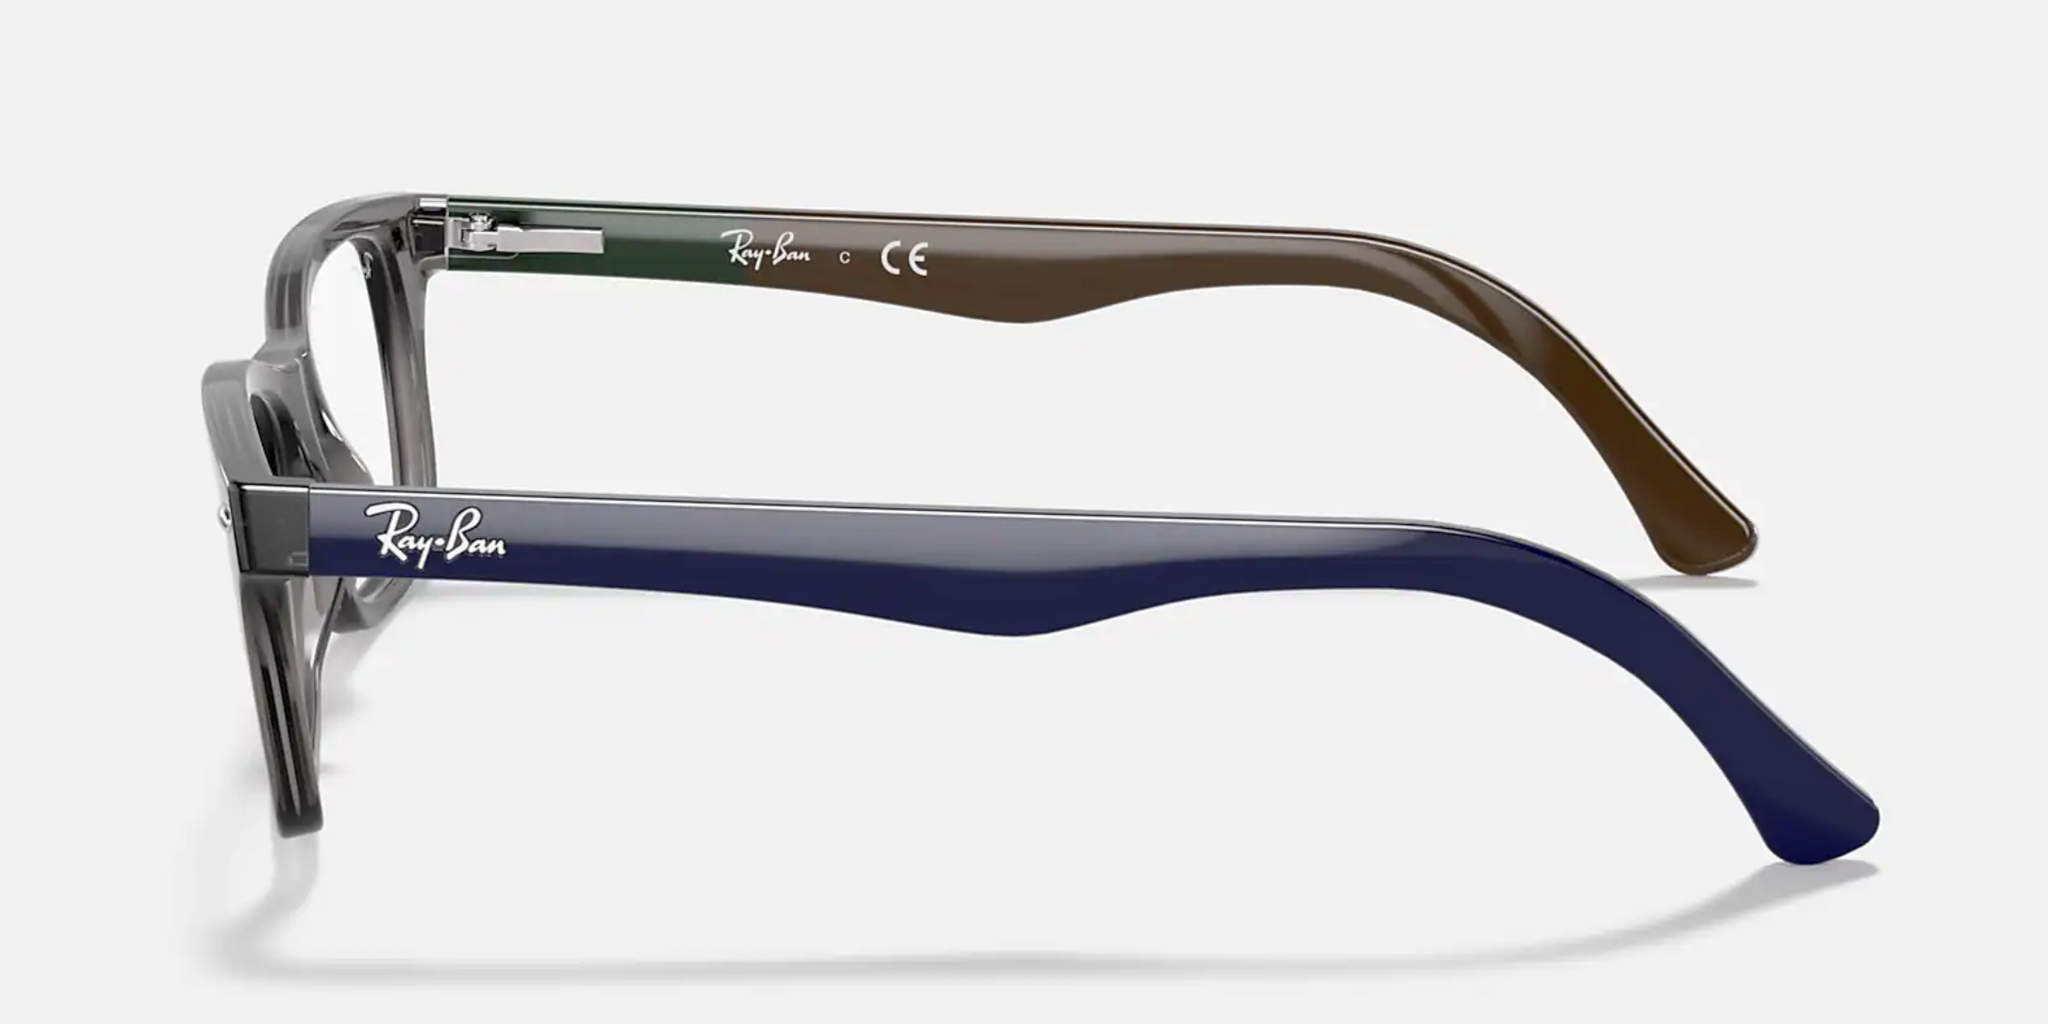 Analytiker tonehøjde Utroskab Ray-Ban RB5228 Single Vision Prescription - Flight Sunglasses